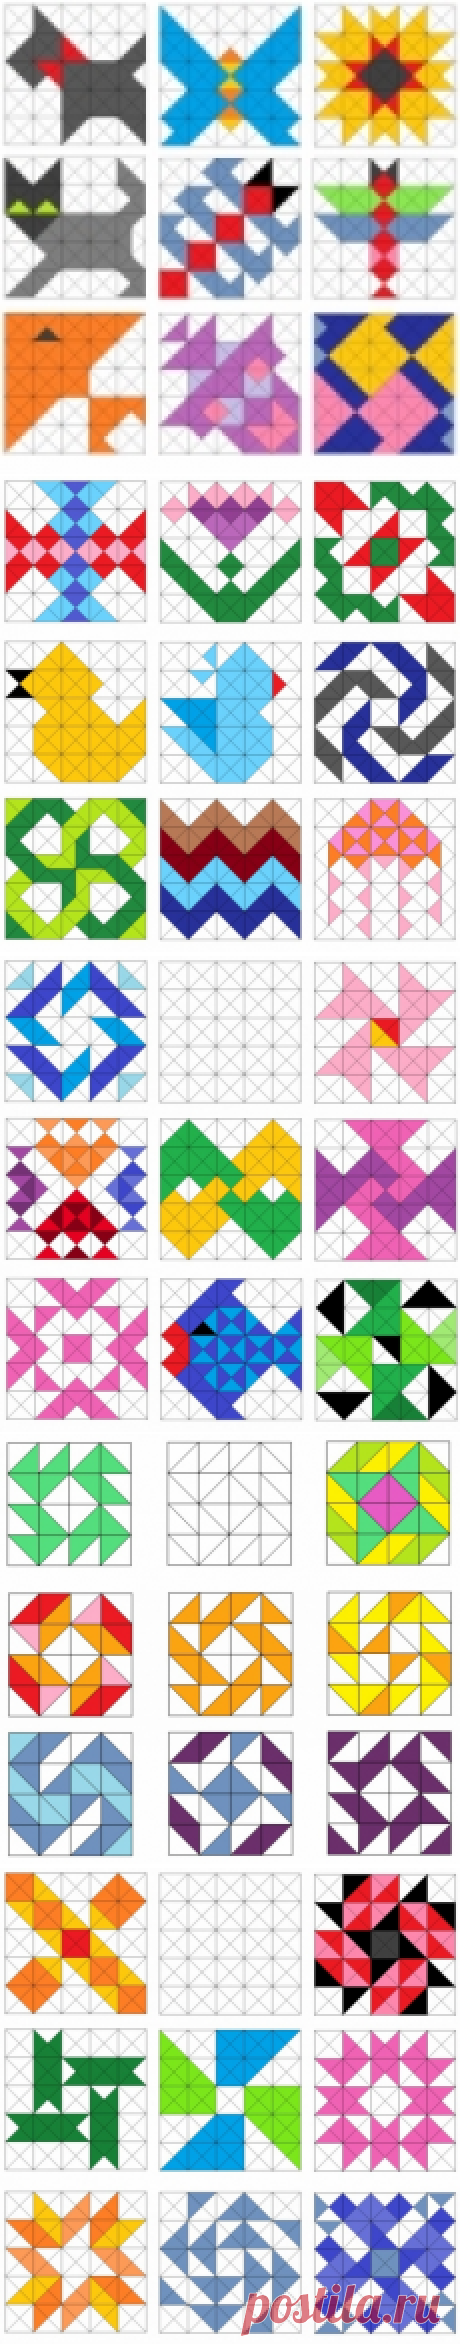 Образцы лоскутных блоков с использованием квадратов и треугольников.